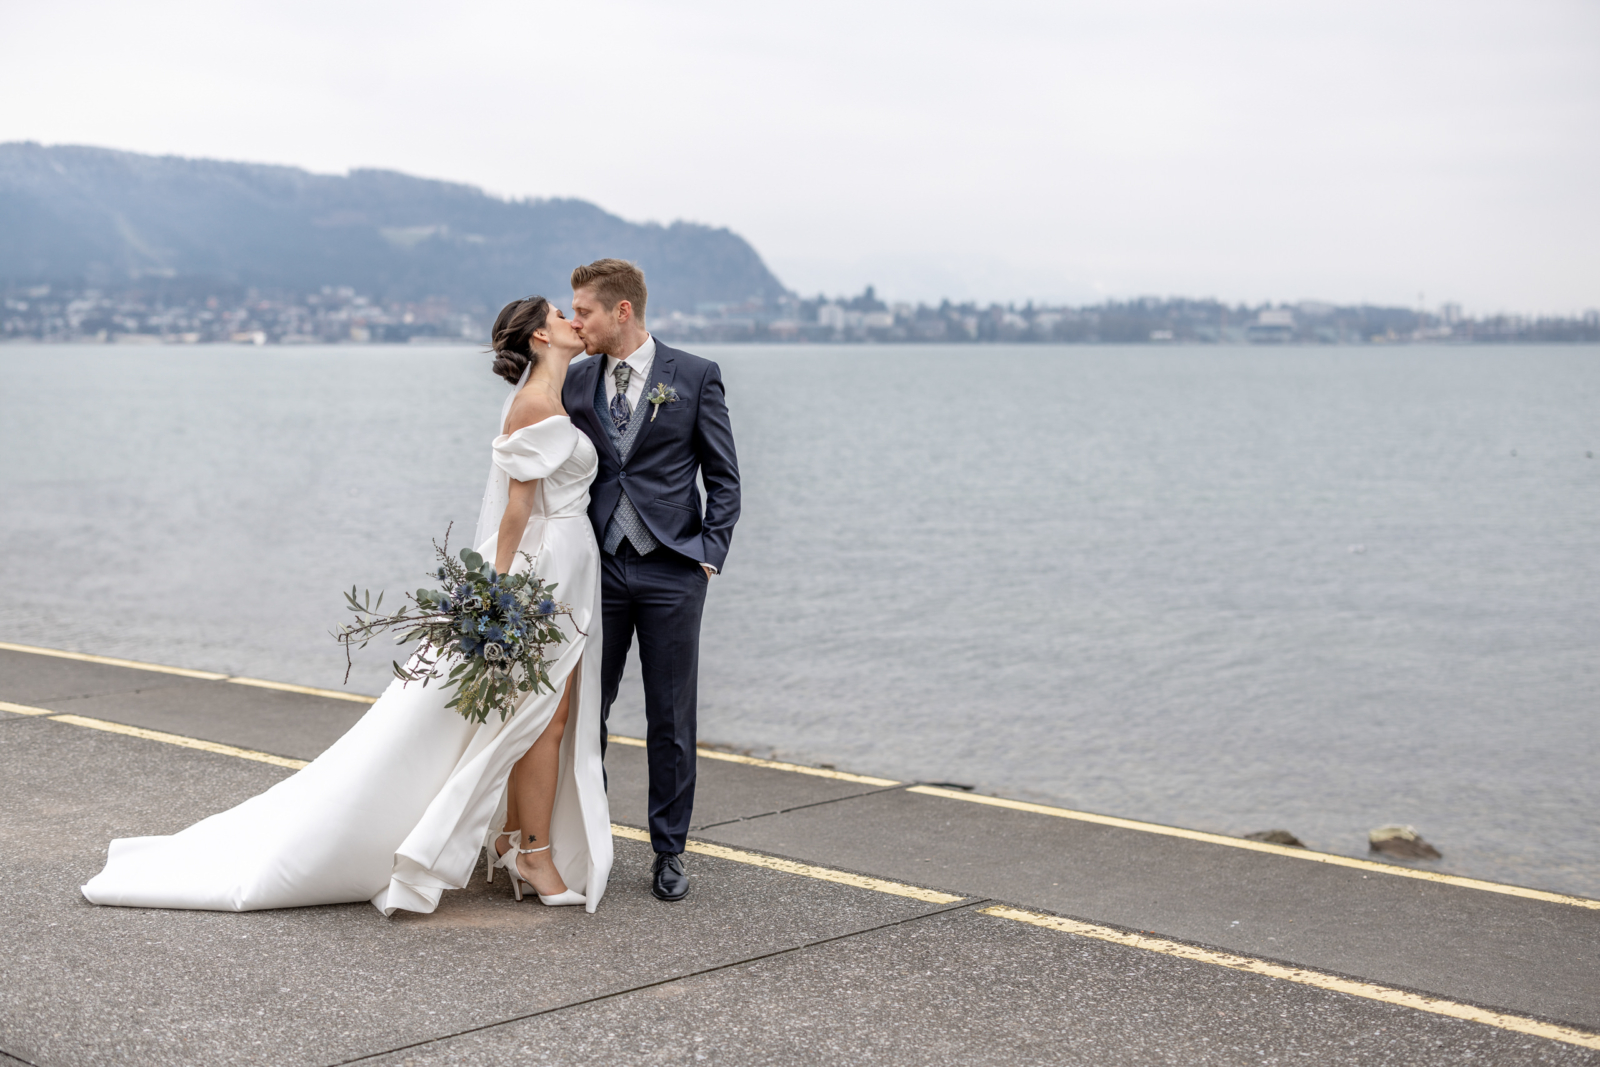 elegant wedding photos by the lake in Austria